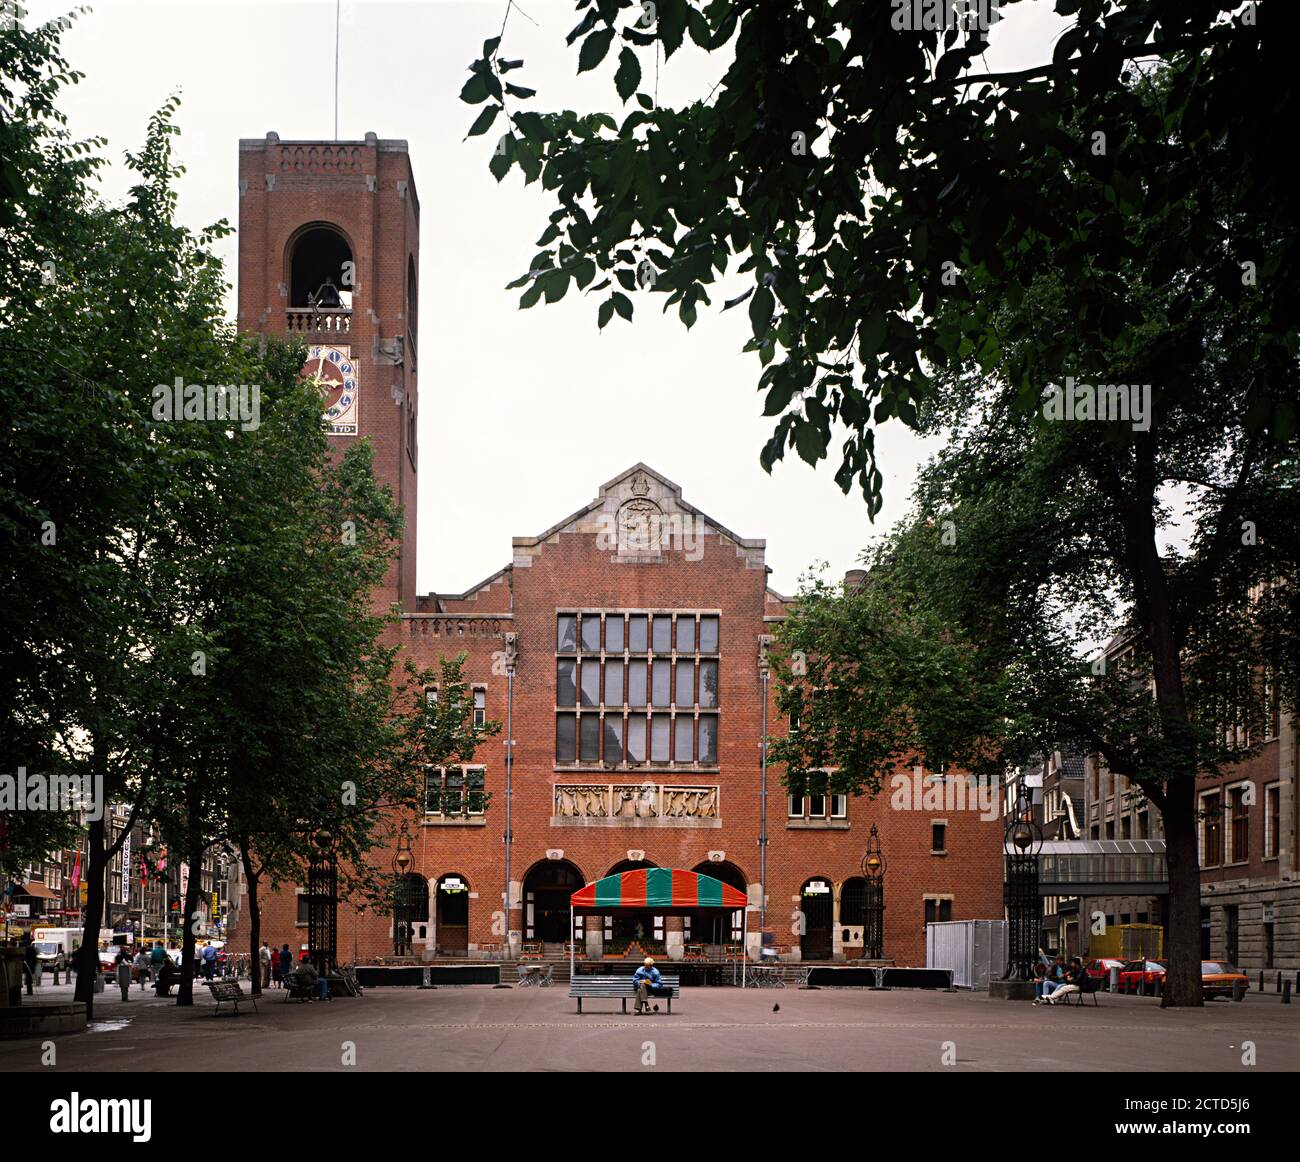 Die Beurs van Berlage ist ein Gebäude am Damrak, im Zentrum von Amsterdam. Es wurde zwischen 1896 und 1903 gebaut. 1990 Renovierung durch Eekhout & Zaanen. Stockfoto